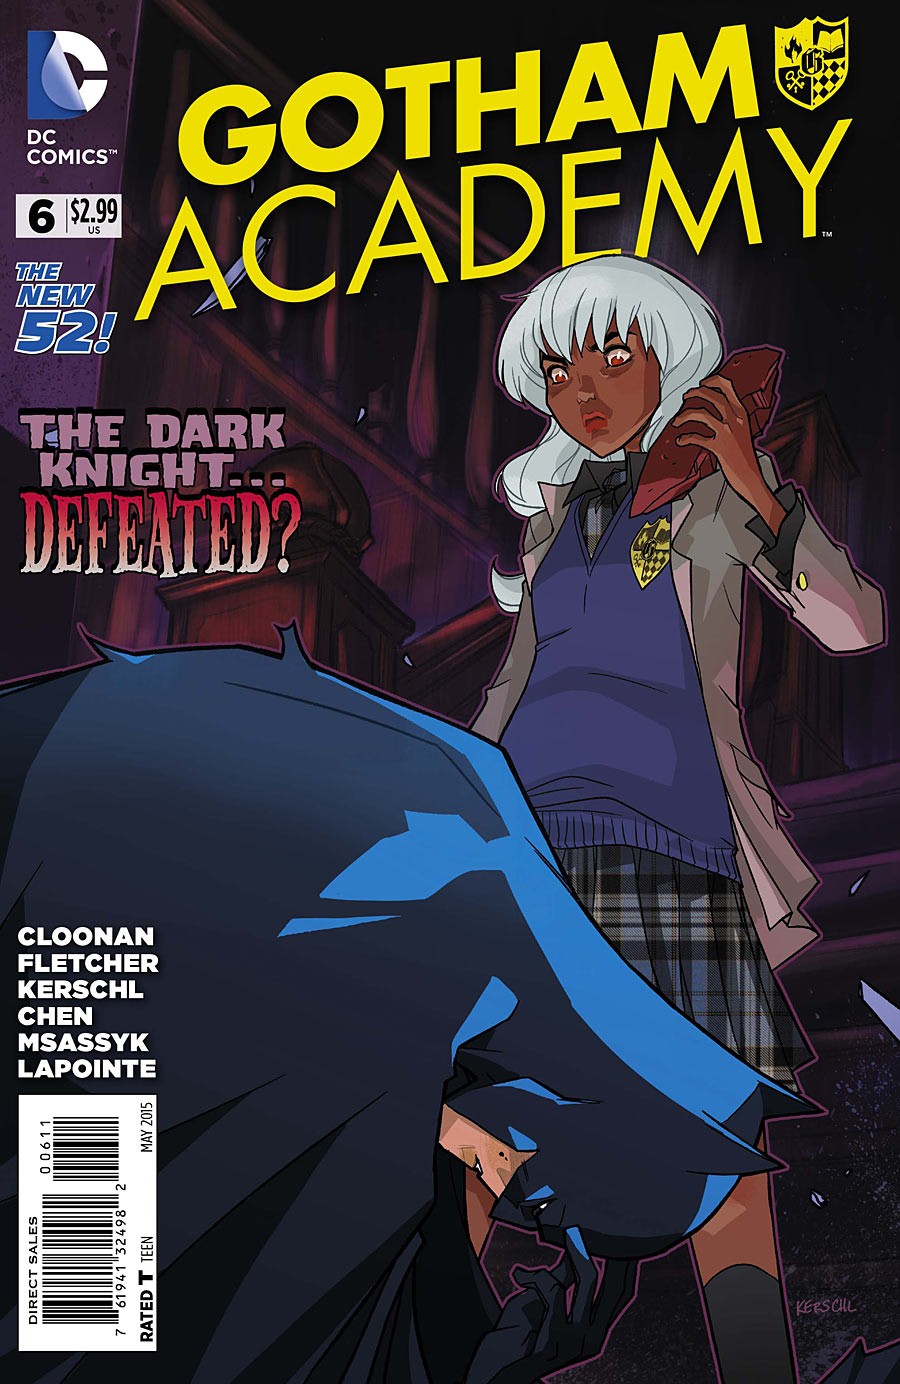 Gotham Academy Vol. 1 #6